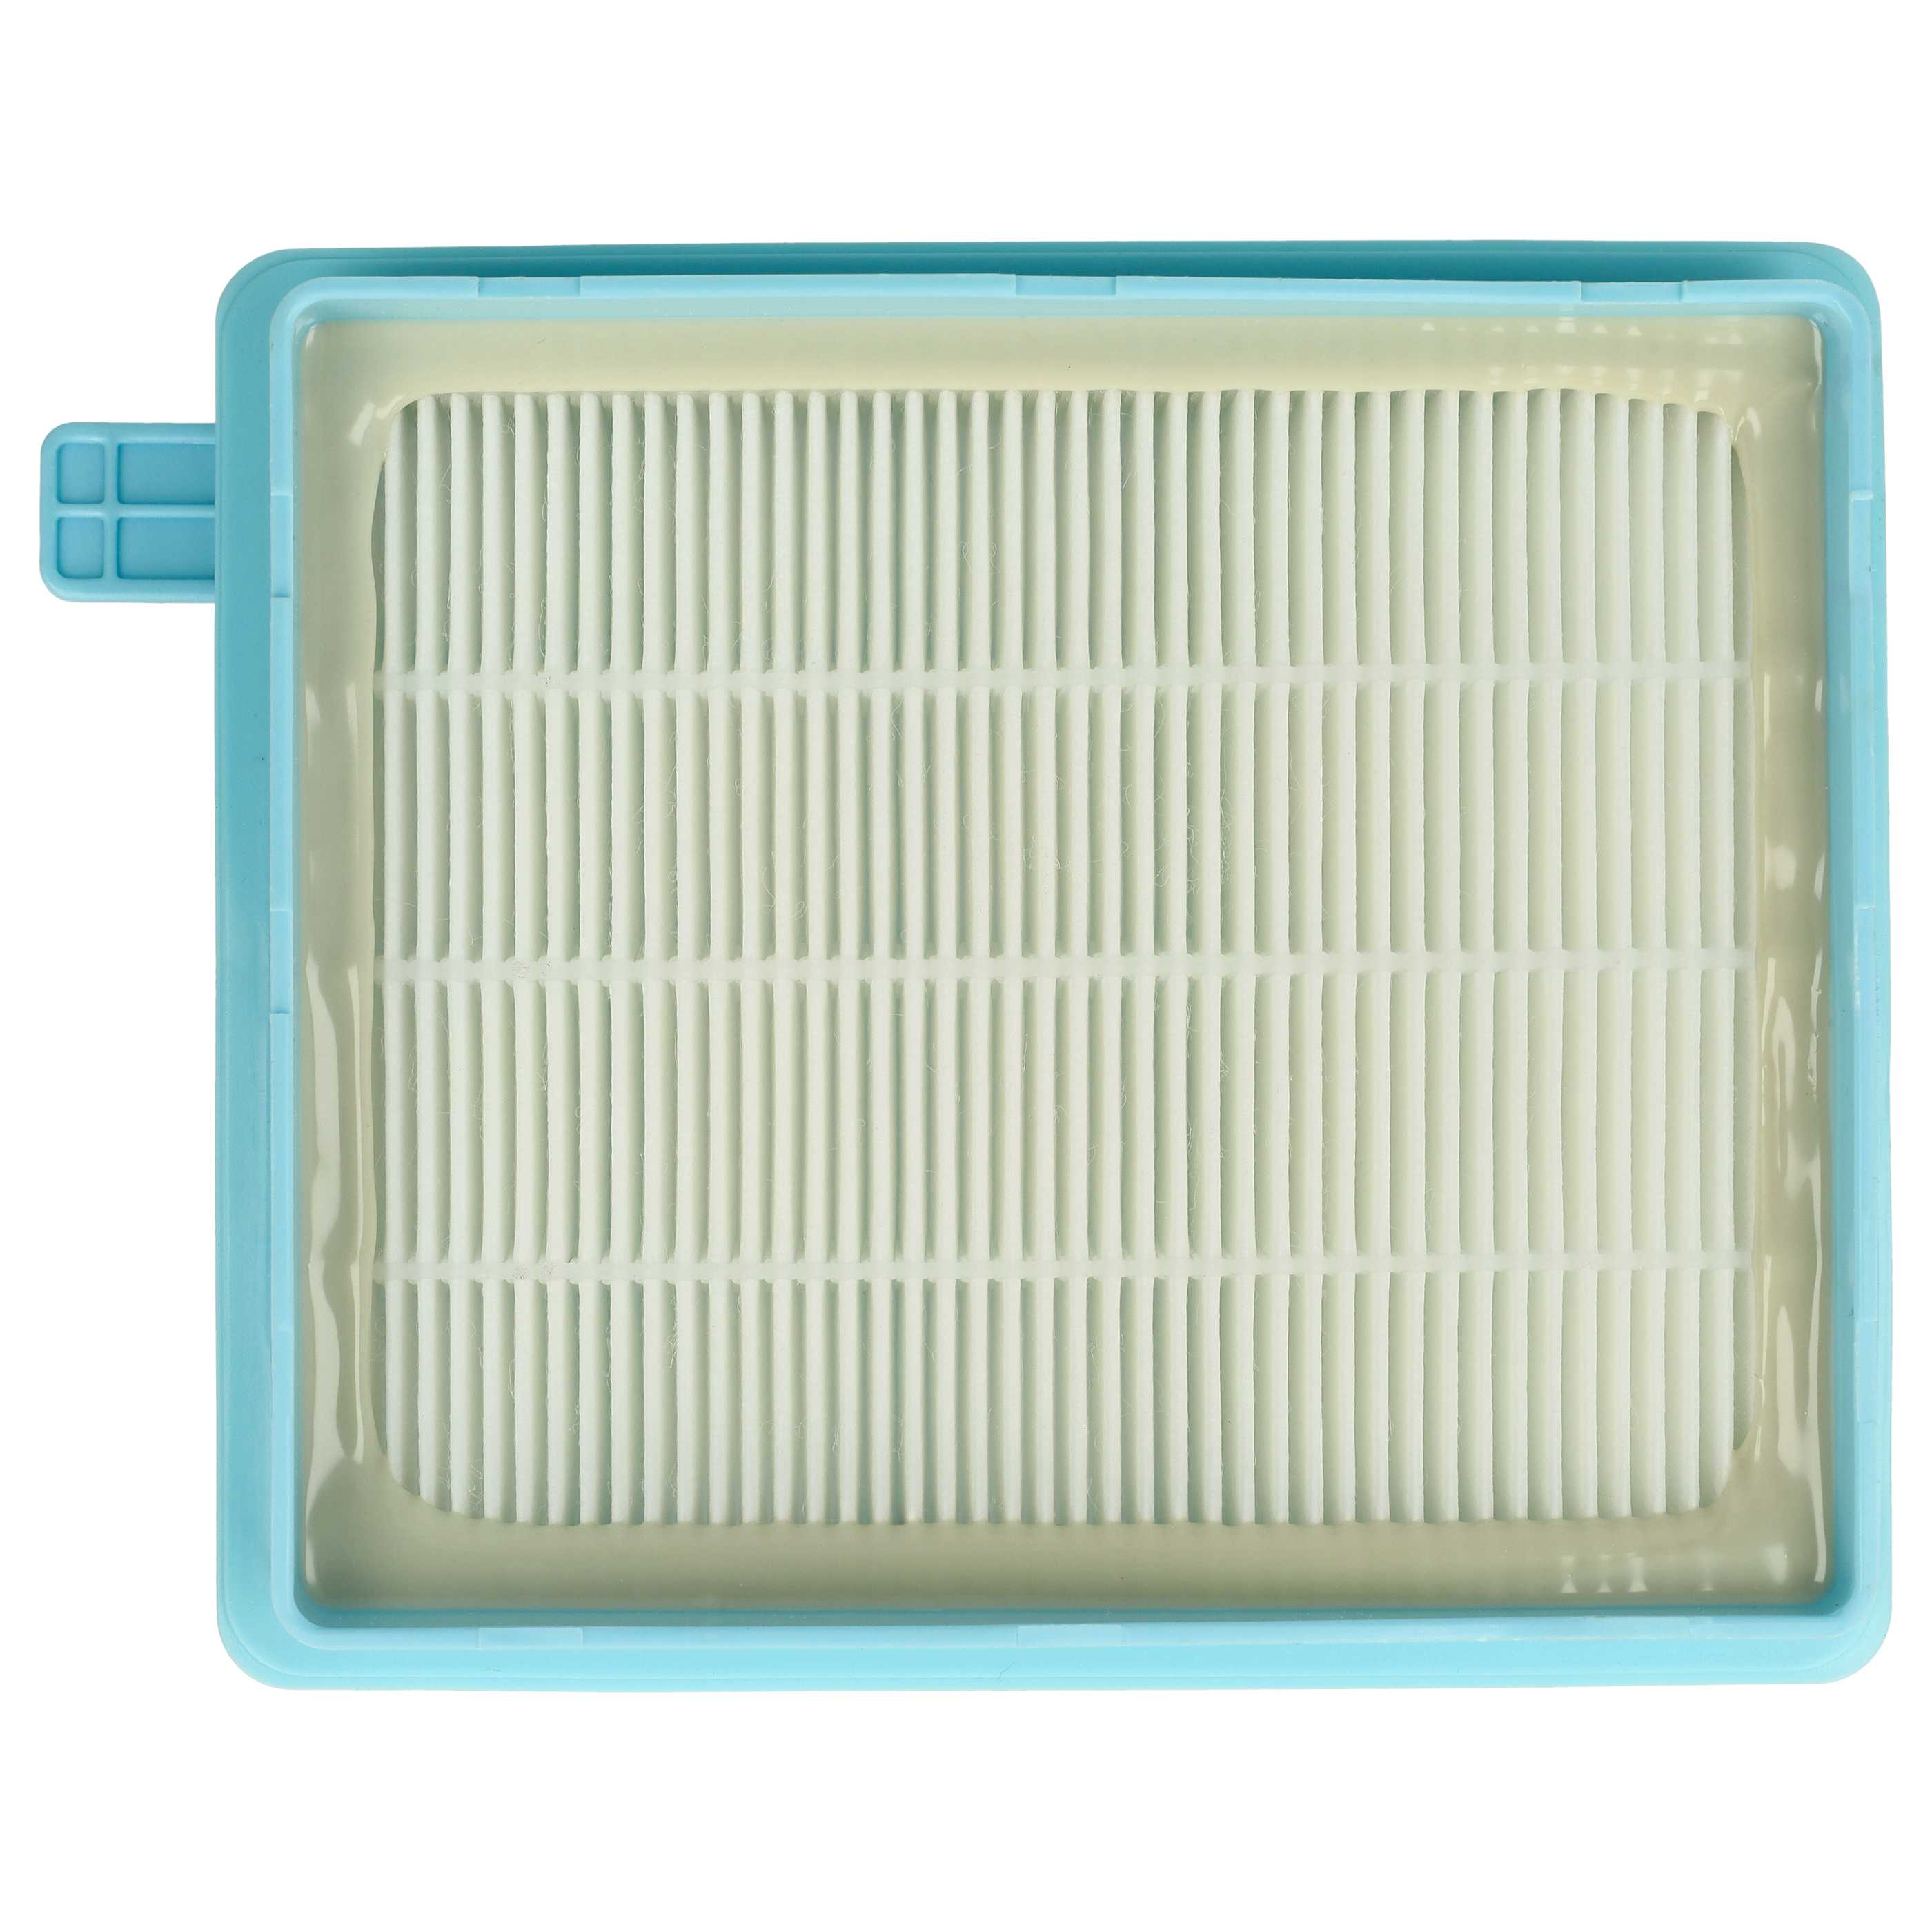 Filtre remplace Grundig 9178005623 pour aspirateur - filtre HEPA